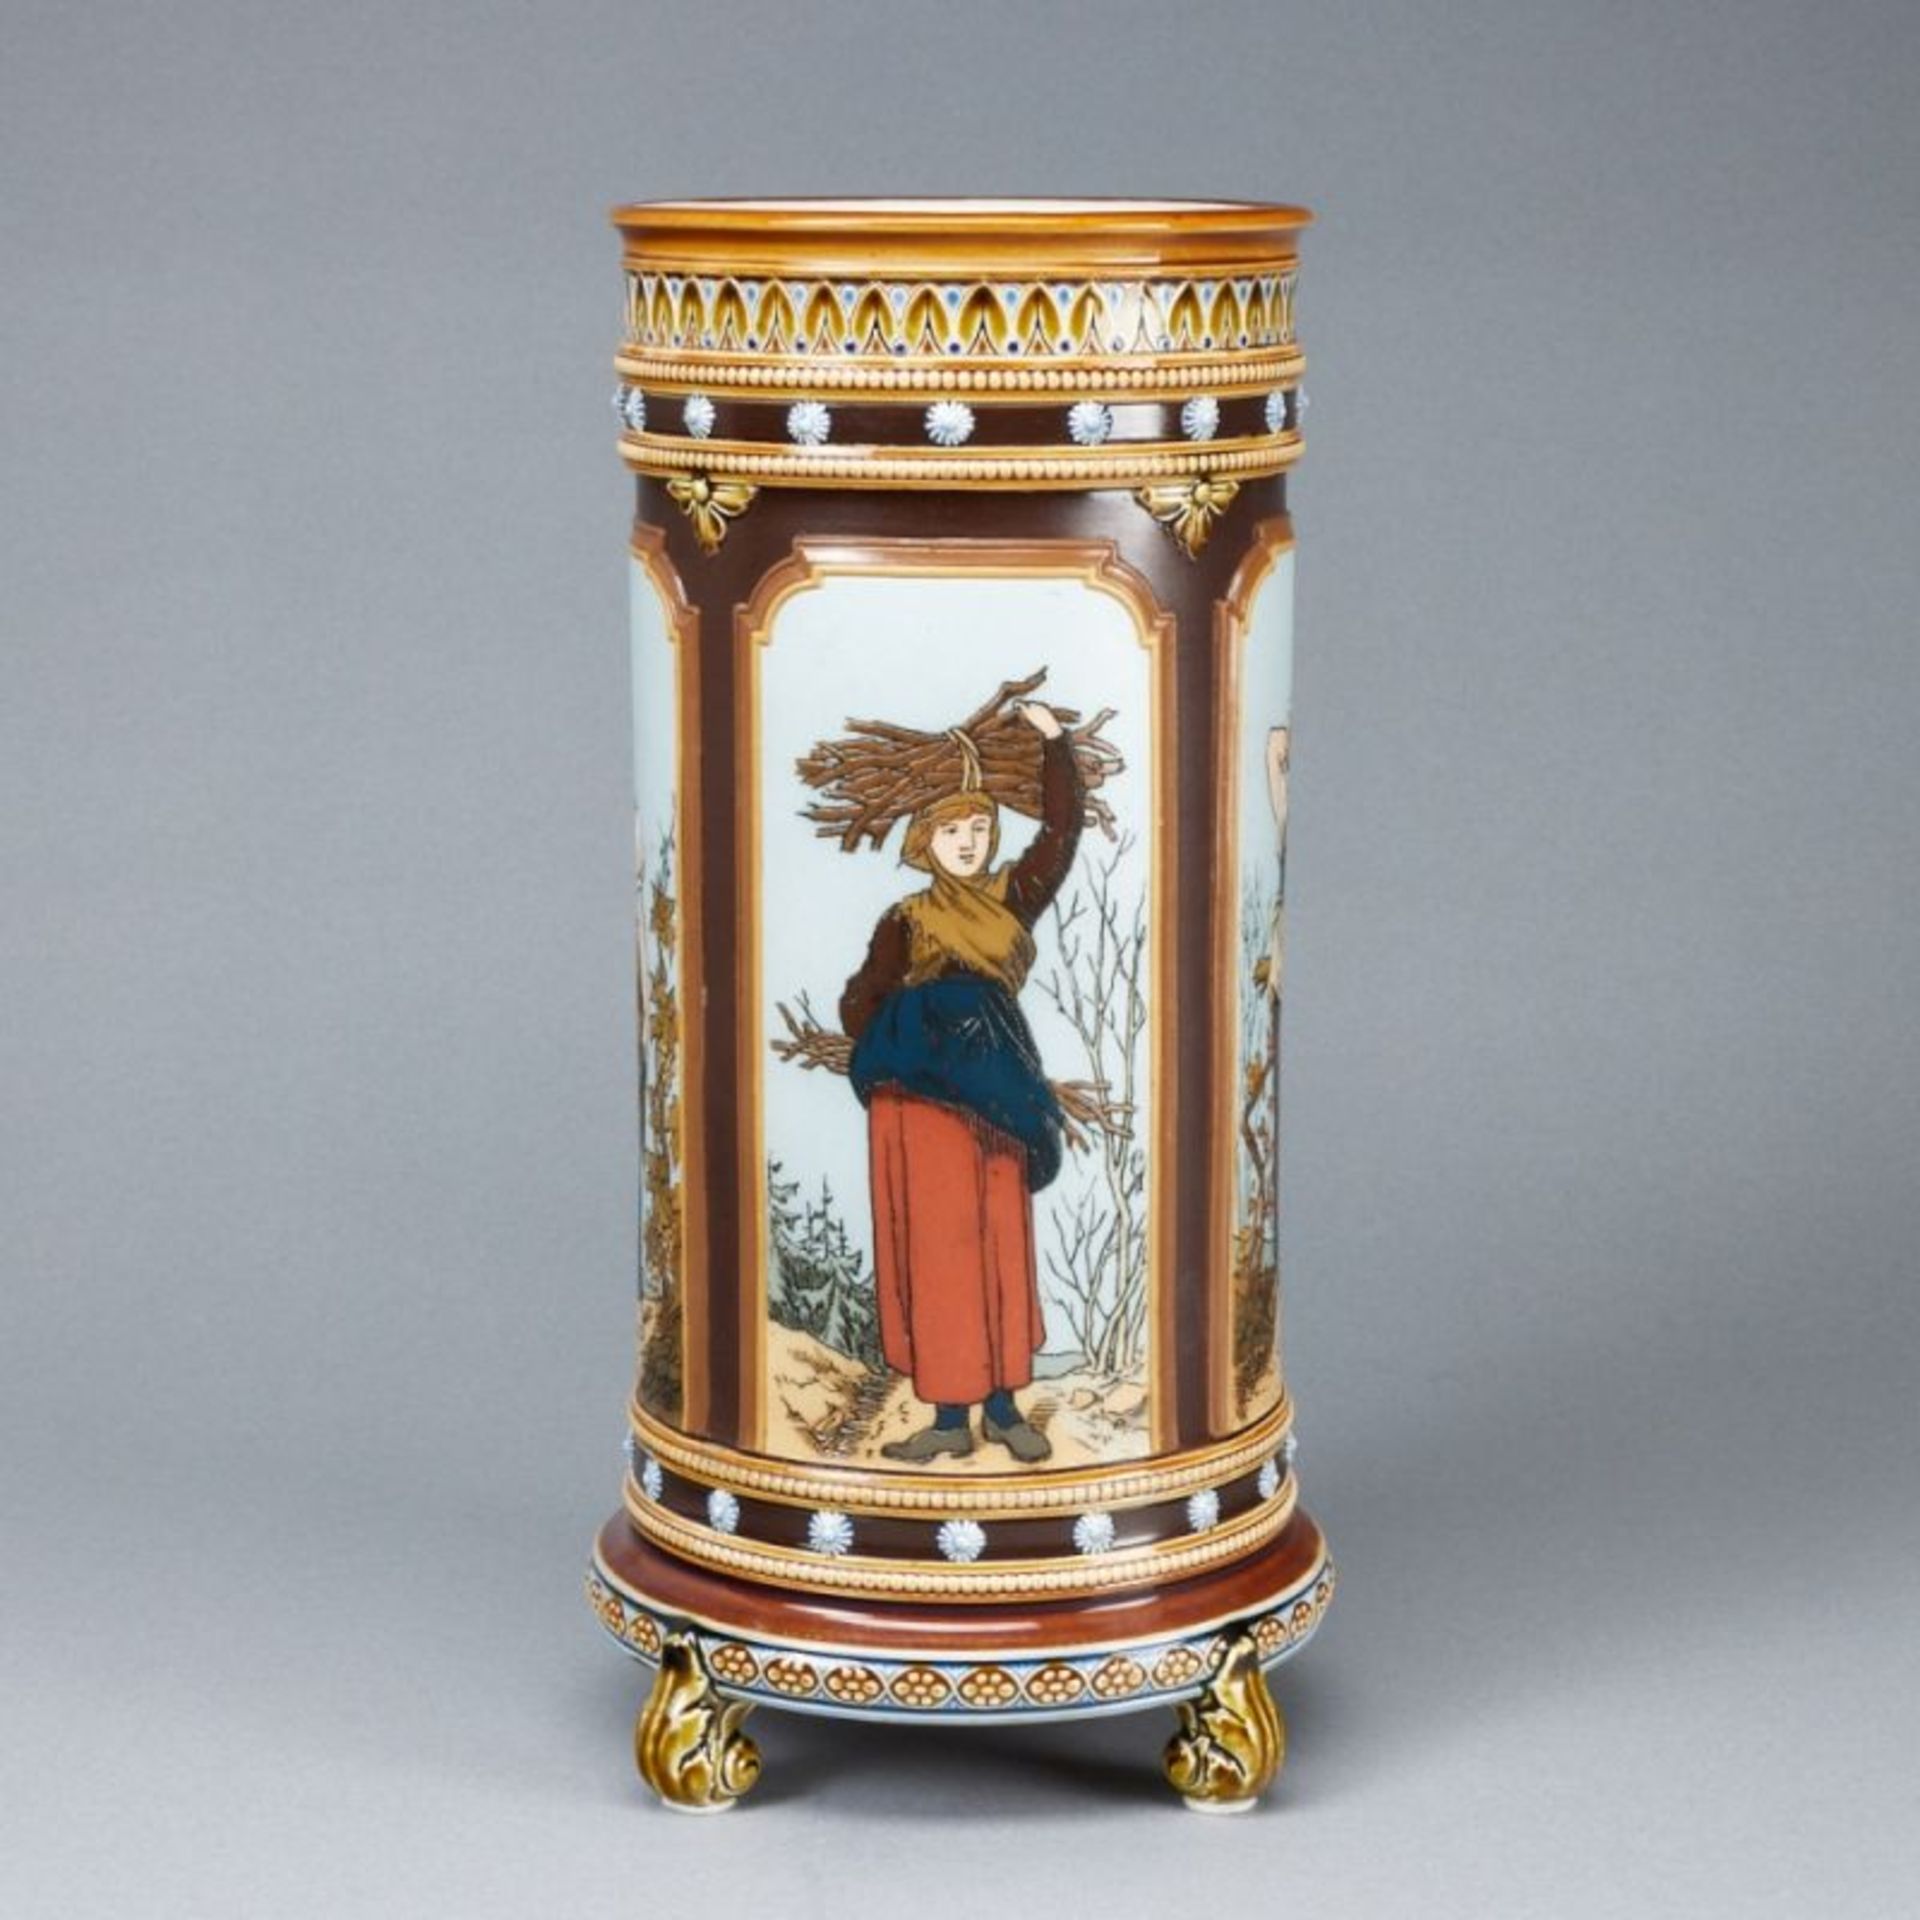 Jugendstil Vase - Vier Jahreszeiten. Villeroy & Boch, Mettlach um 1885. - Bild 4 aus 4